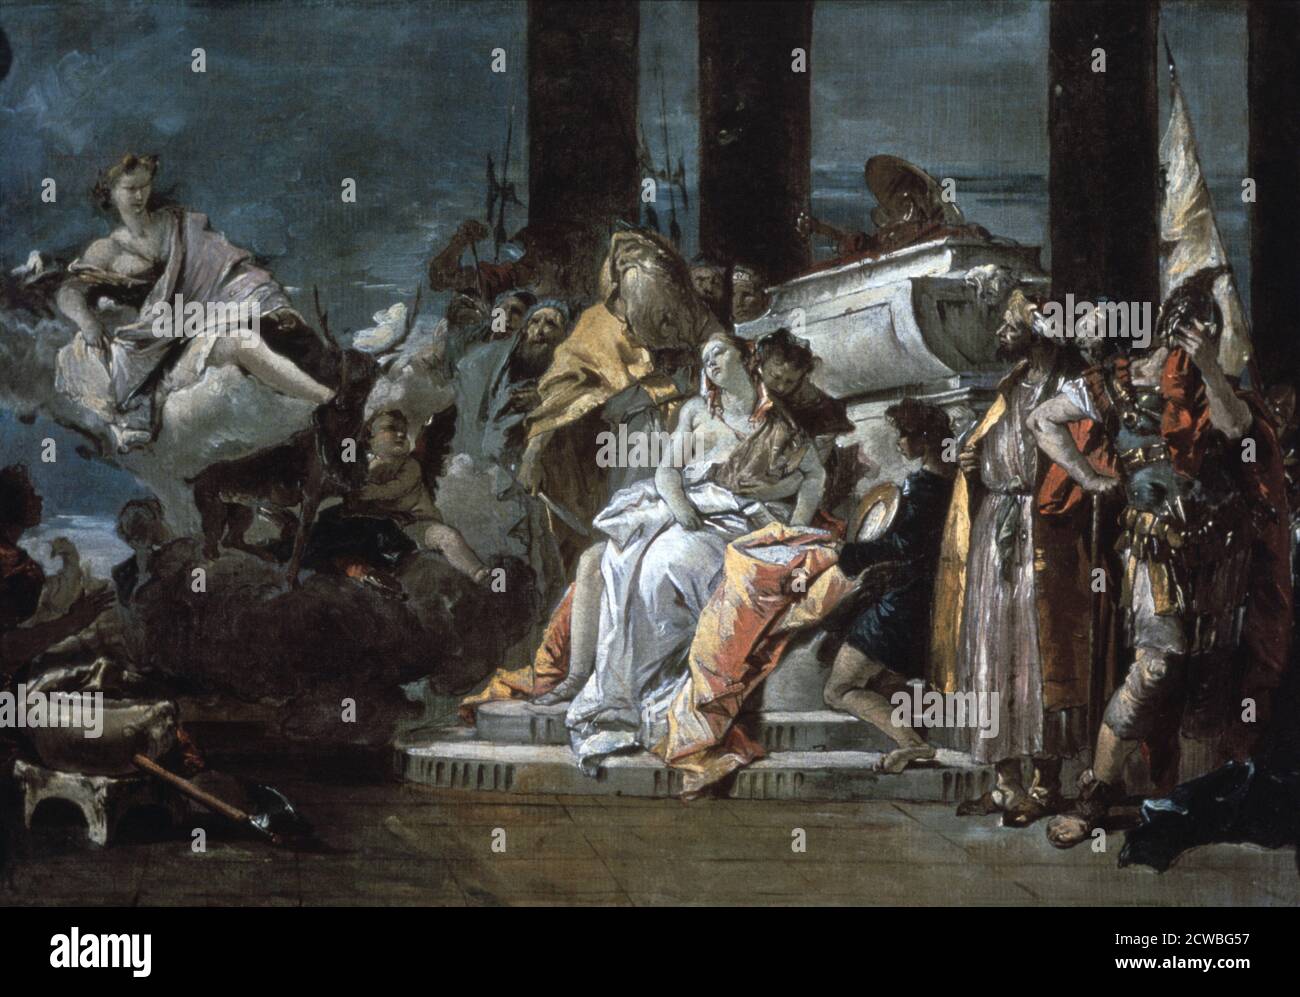 Sacrifice d'Iphigenia' par Giovanni Battista Tiepolo, 1735. Artemis, la déesse grecque de la chasse, observe les préparatifs pour le sacrifice d'Iphigenia, fille d'Agamemnon, qu'elle a exigé. Du musée d'art de l'Université d'Arizona, Tucson, Arizona, États-Unis. Banque D'Images